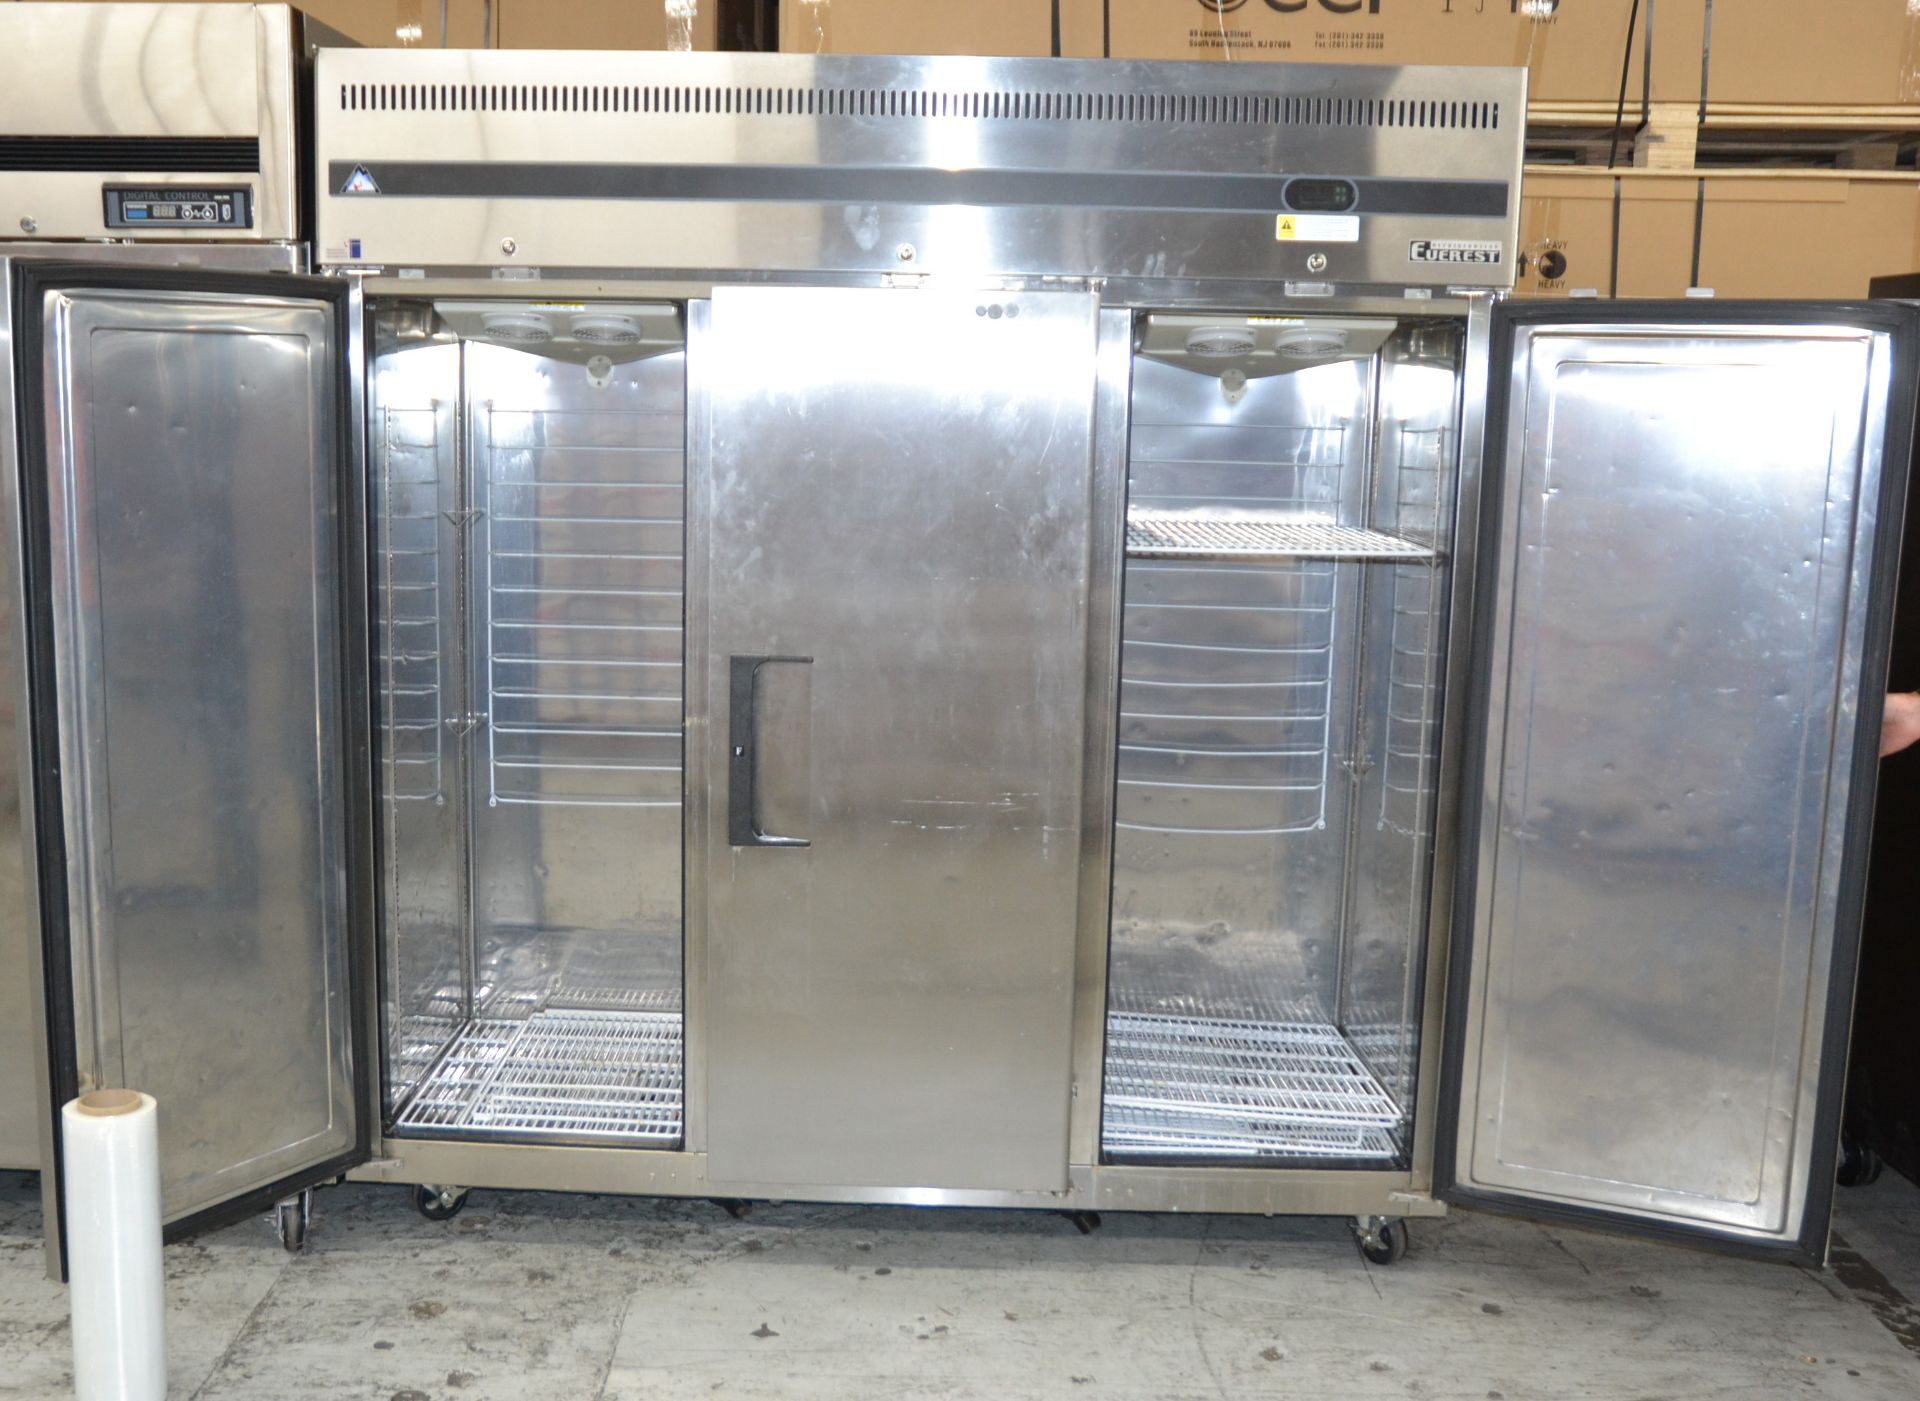 Everest Stainless Steel 3-Door Freezer, Model ESF3 - Image 2 of 3